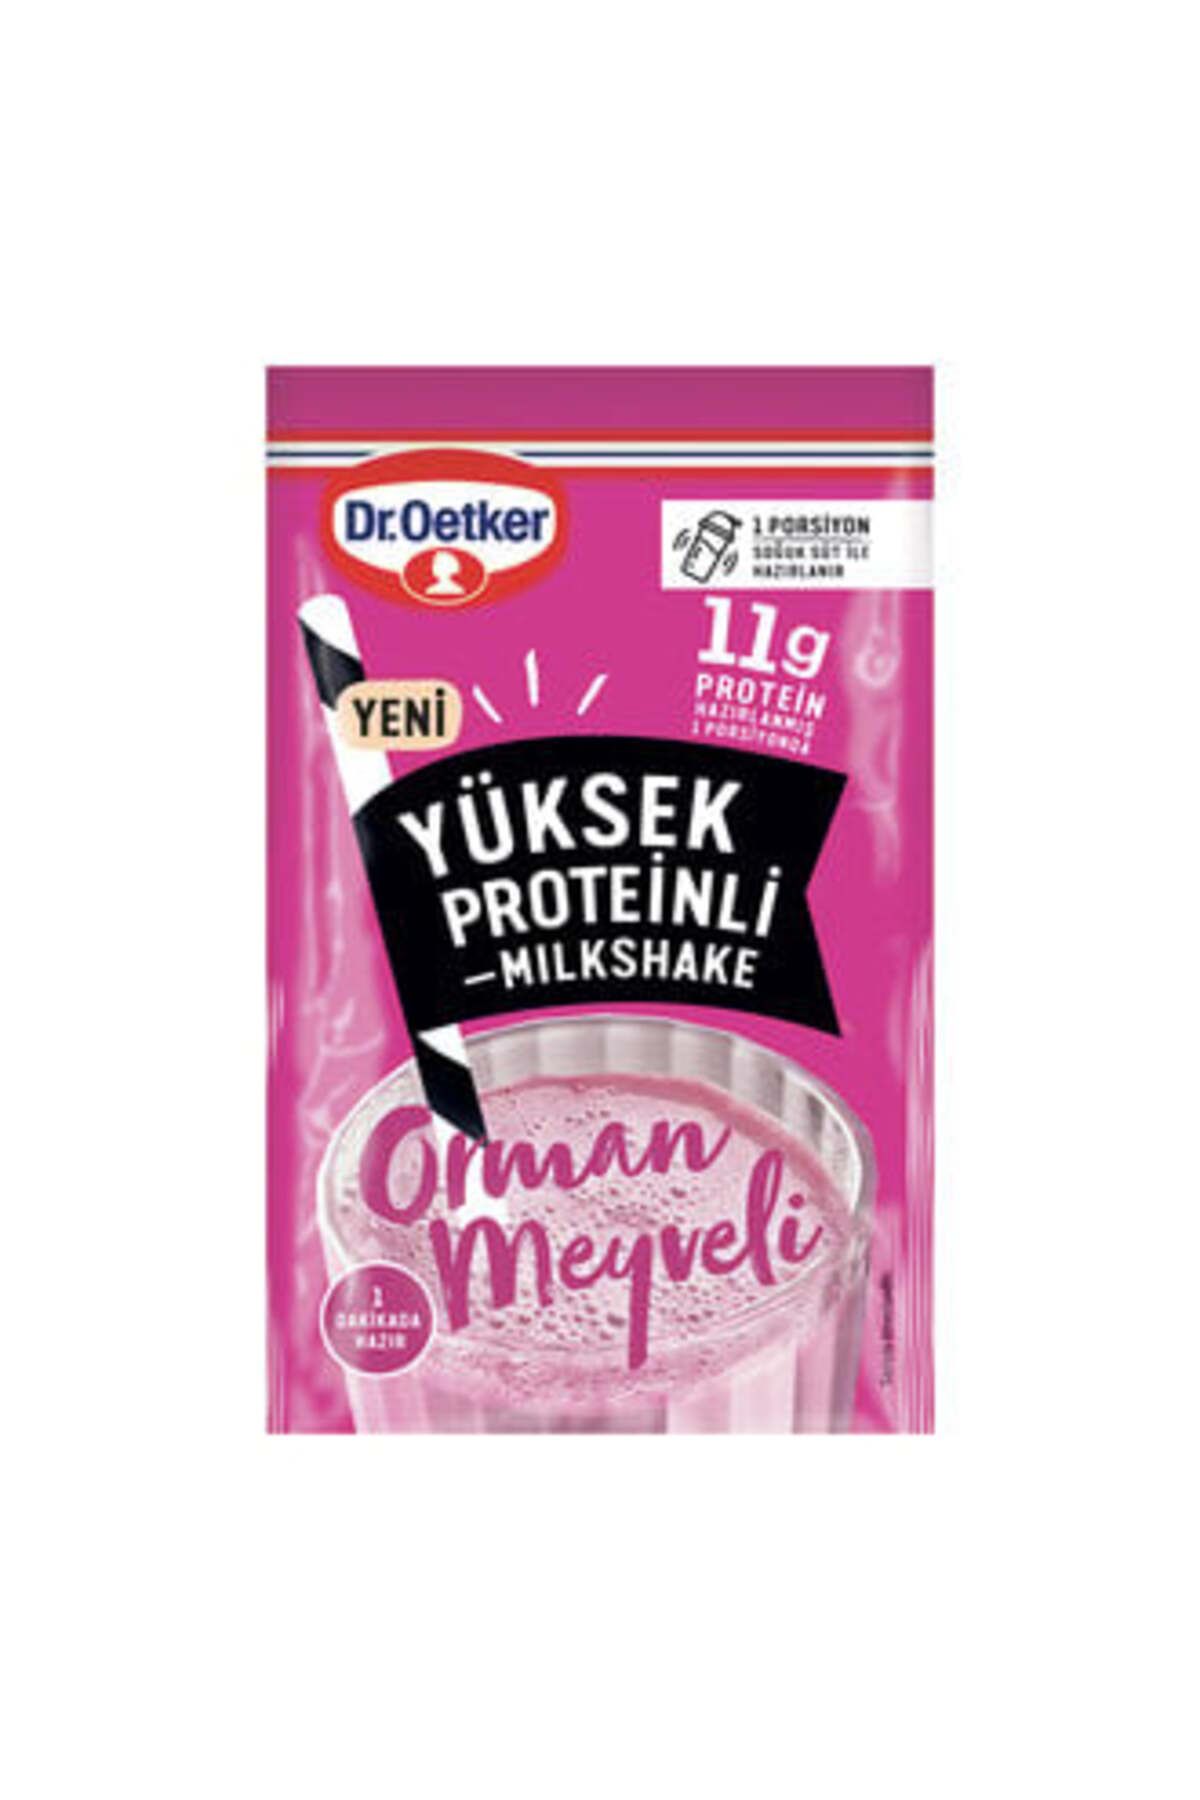 Dr. Oetker Dr.Oetker Orman Meyveli Yüksek Proteinli Milkshake 15 G ( 12 ADET )